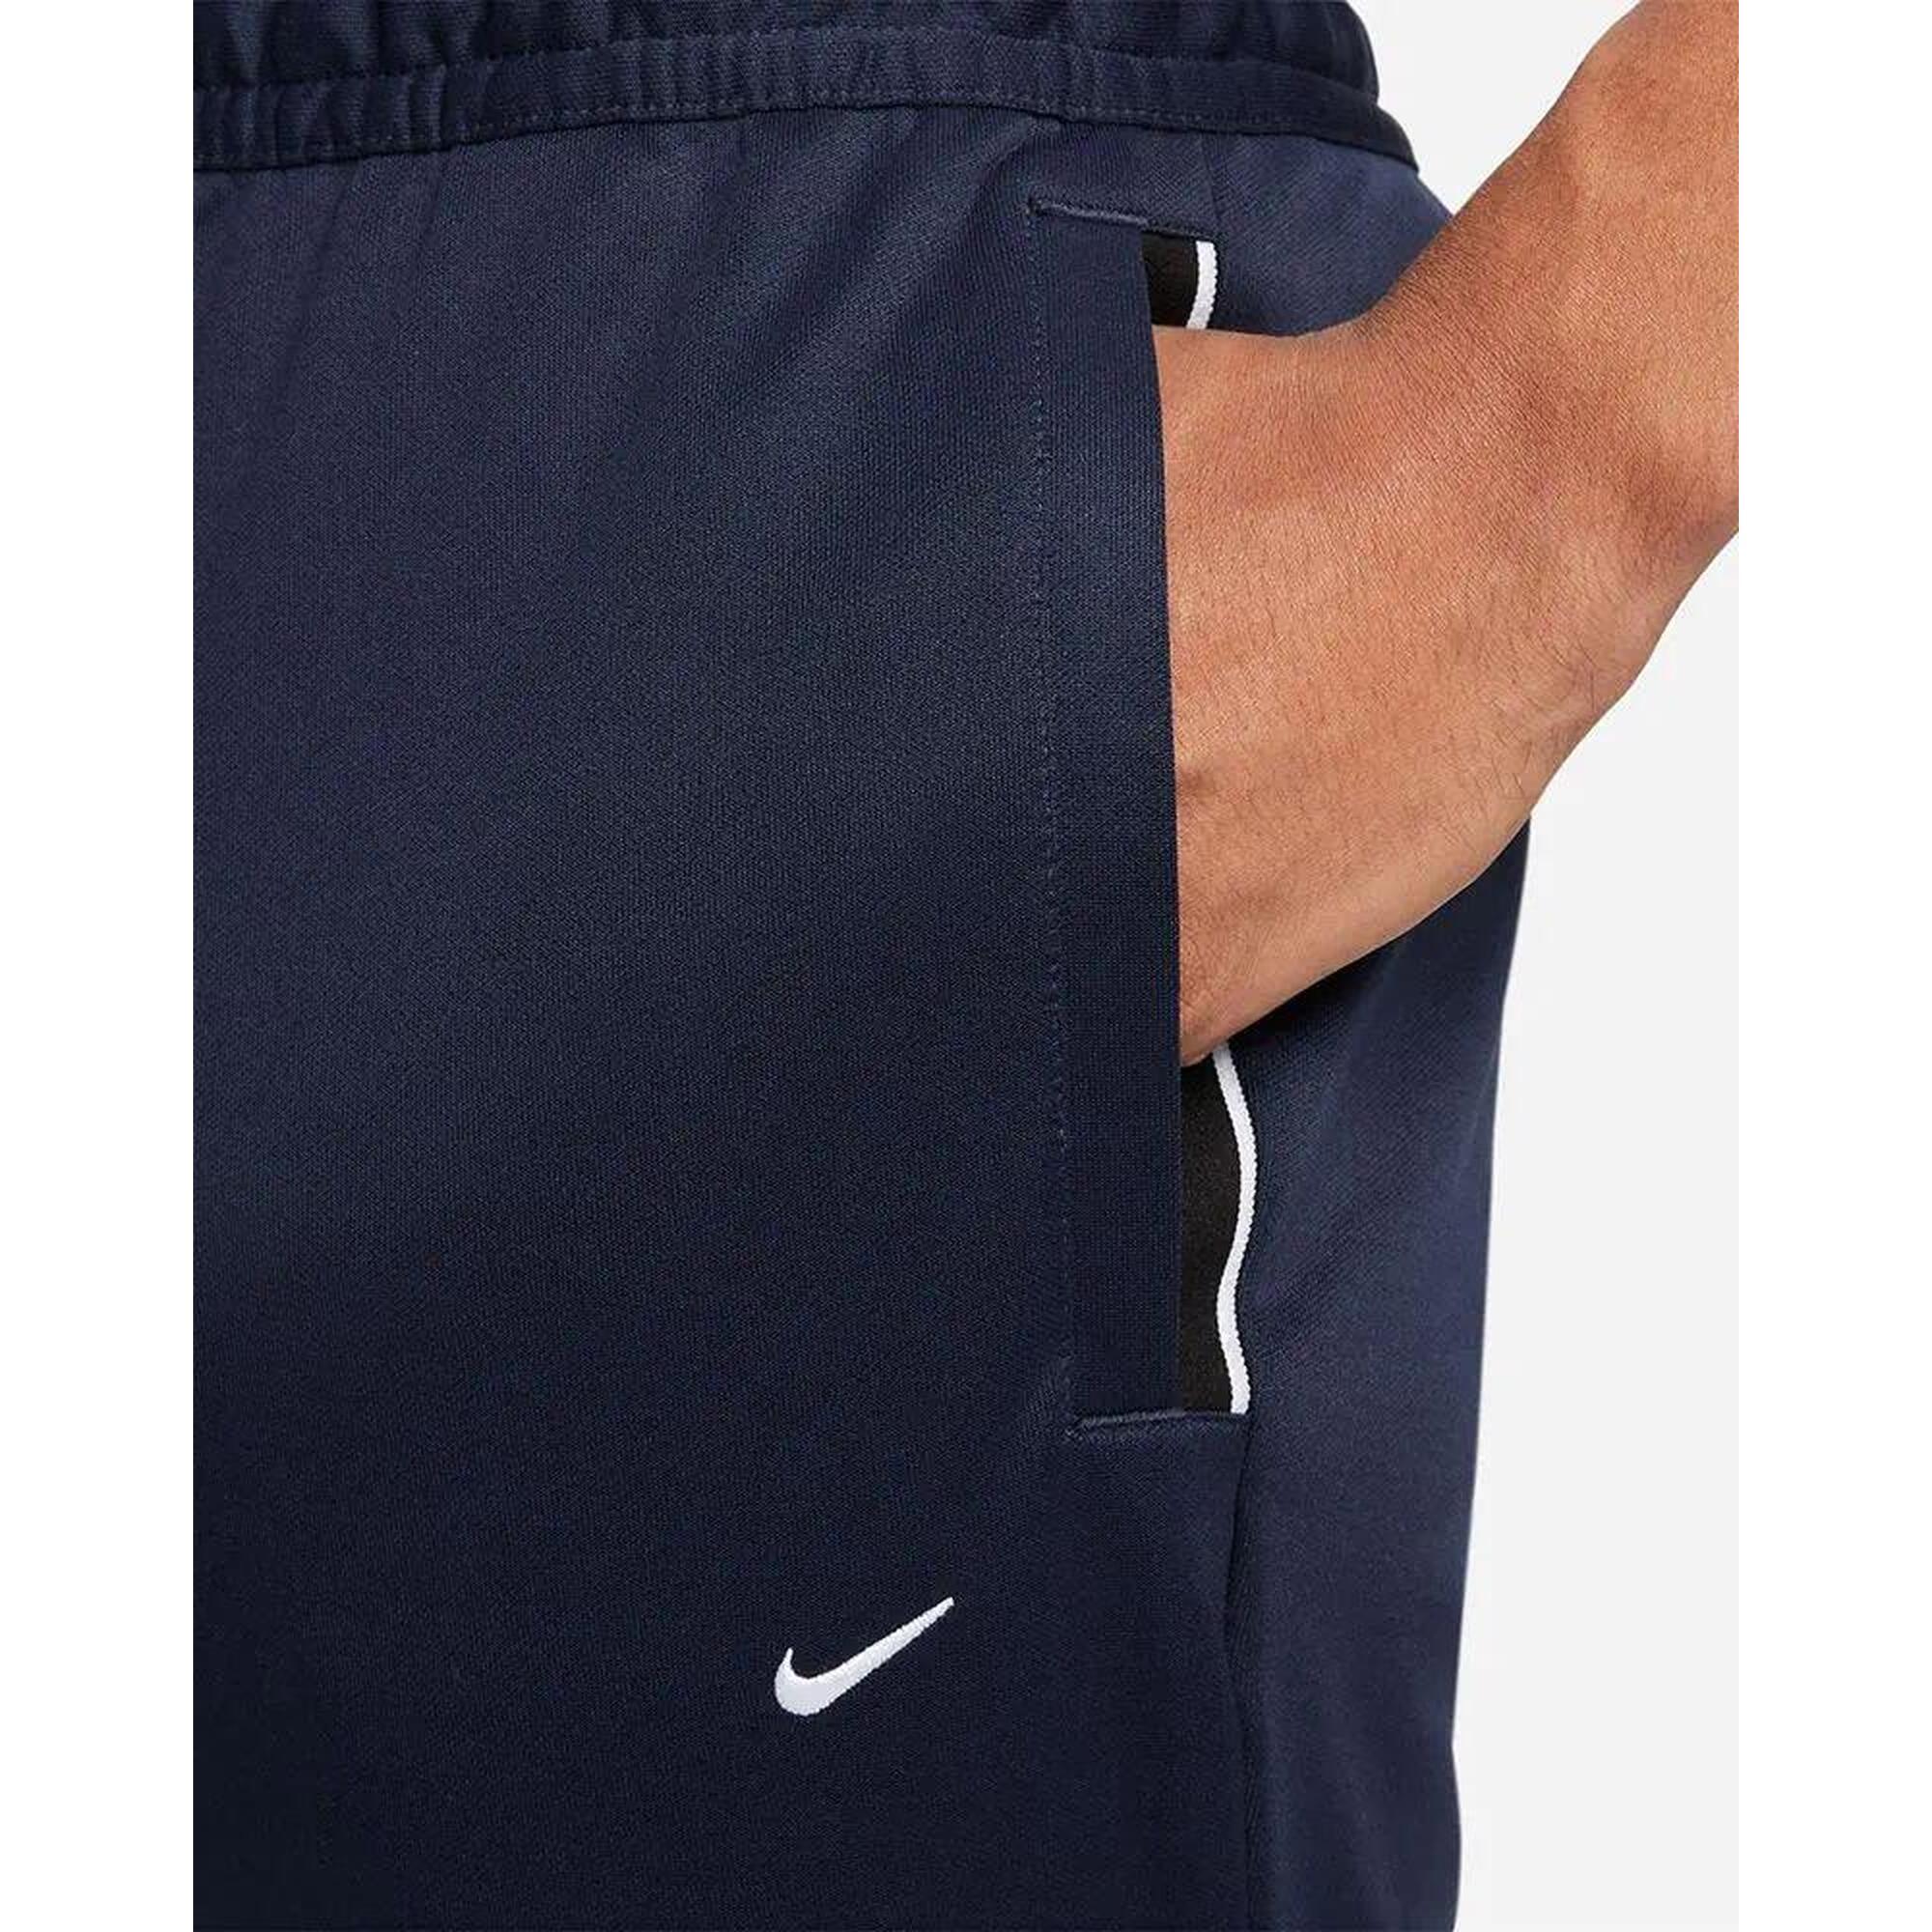 Spodnie treningowe męskie Nike Strike Jogging Pants